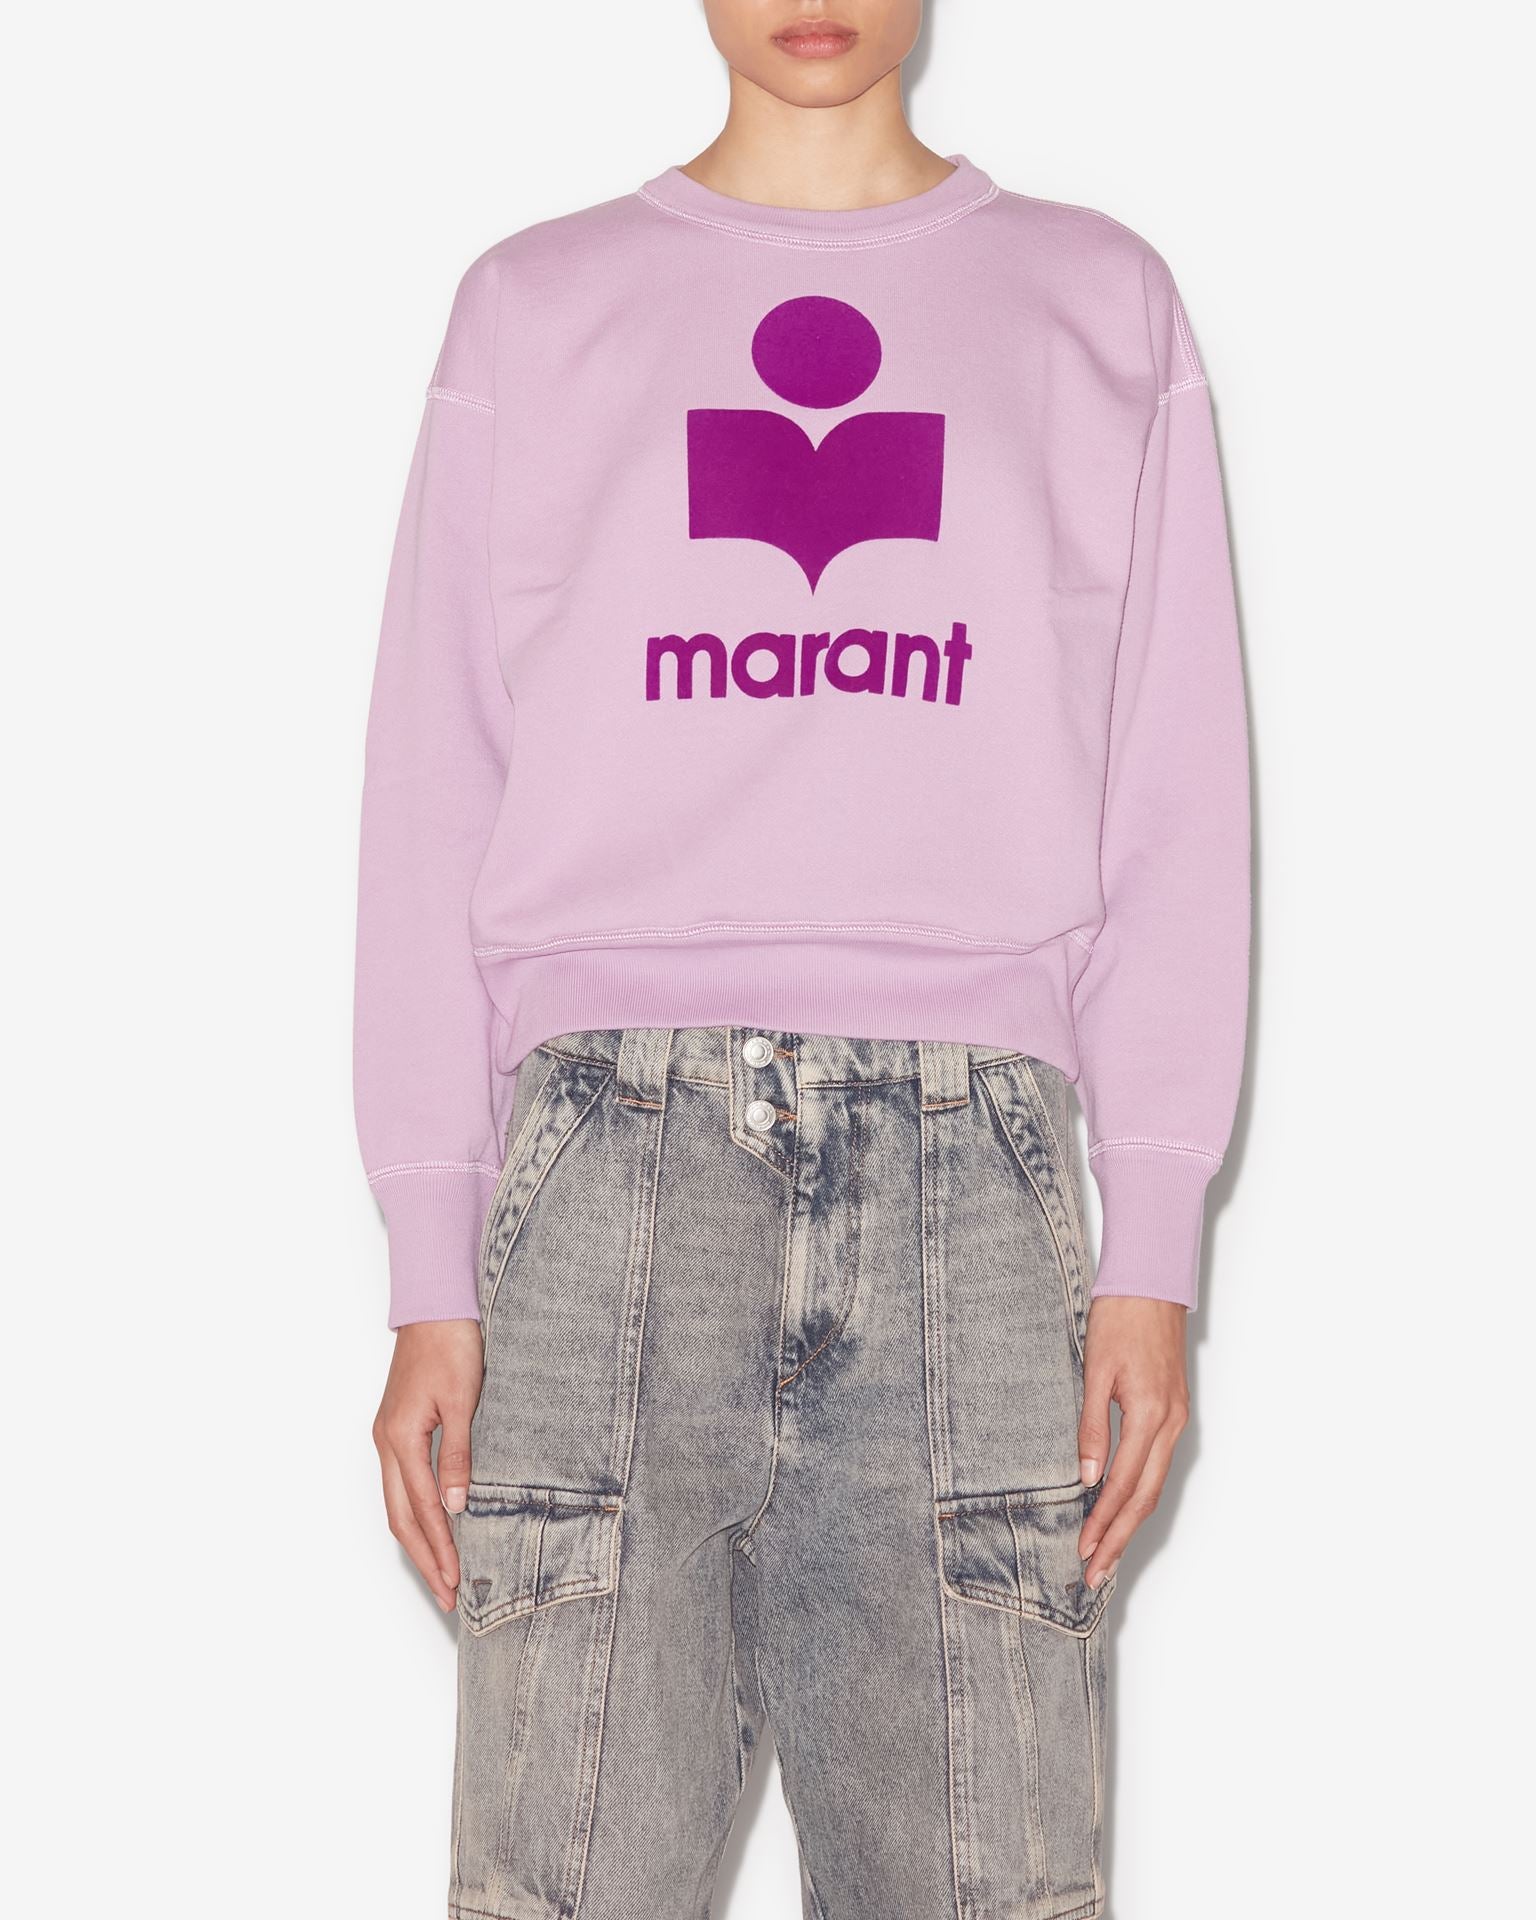 Mobyli Sweatshirt in Lilac/Purple